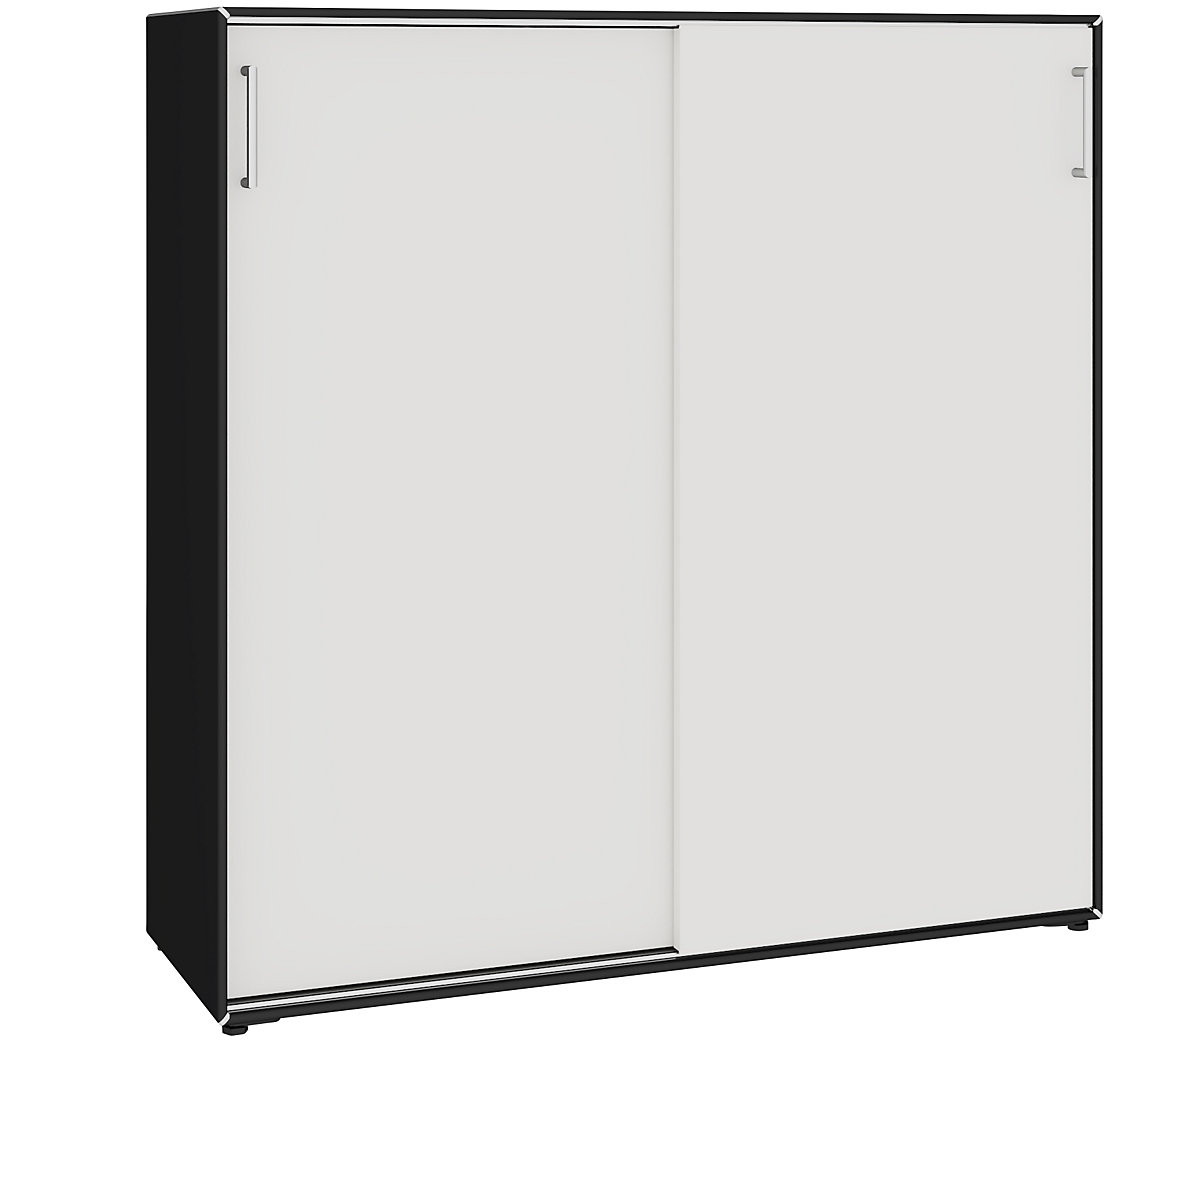 Omara z drsnimi vrati – mauser, 6 predelkov, širina 1155 mm, intenzivno črne / signalno bele barve-6